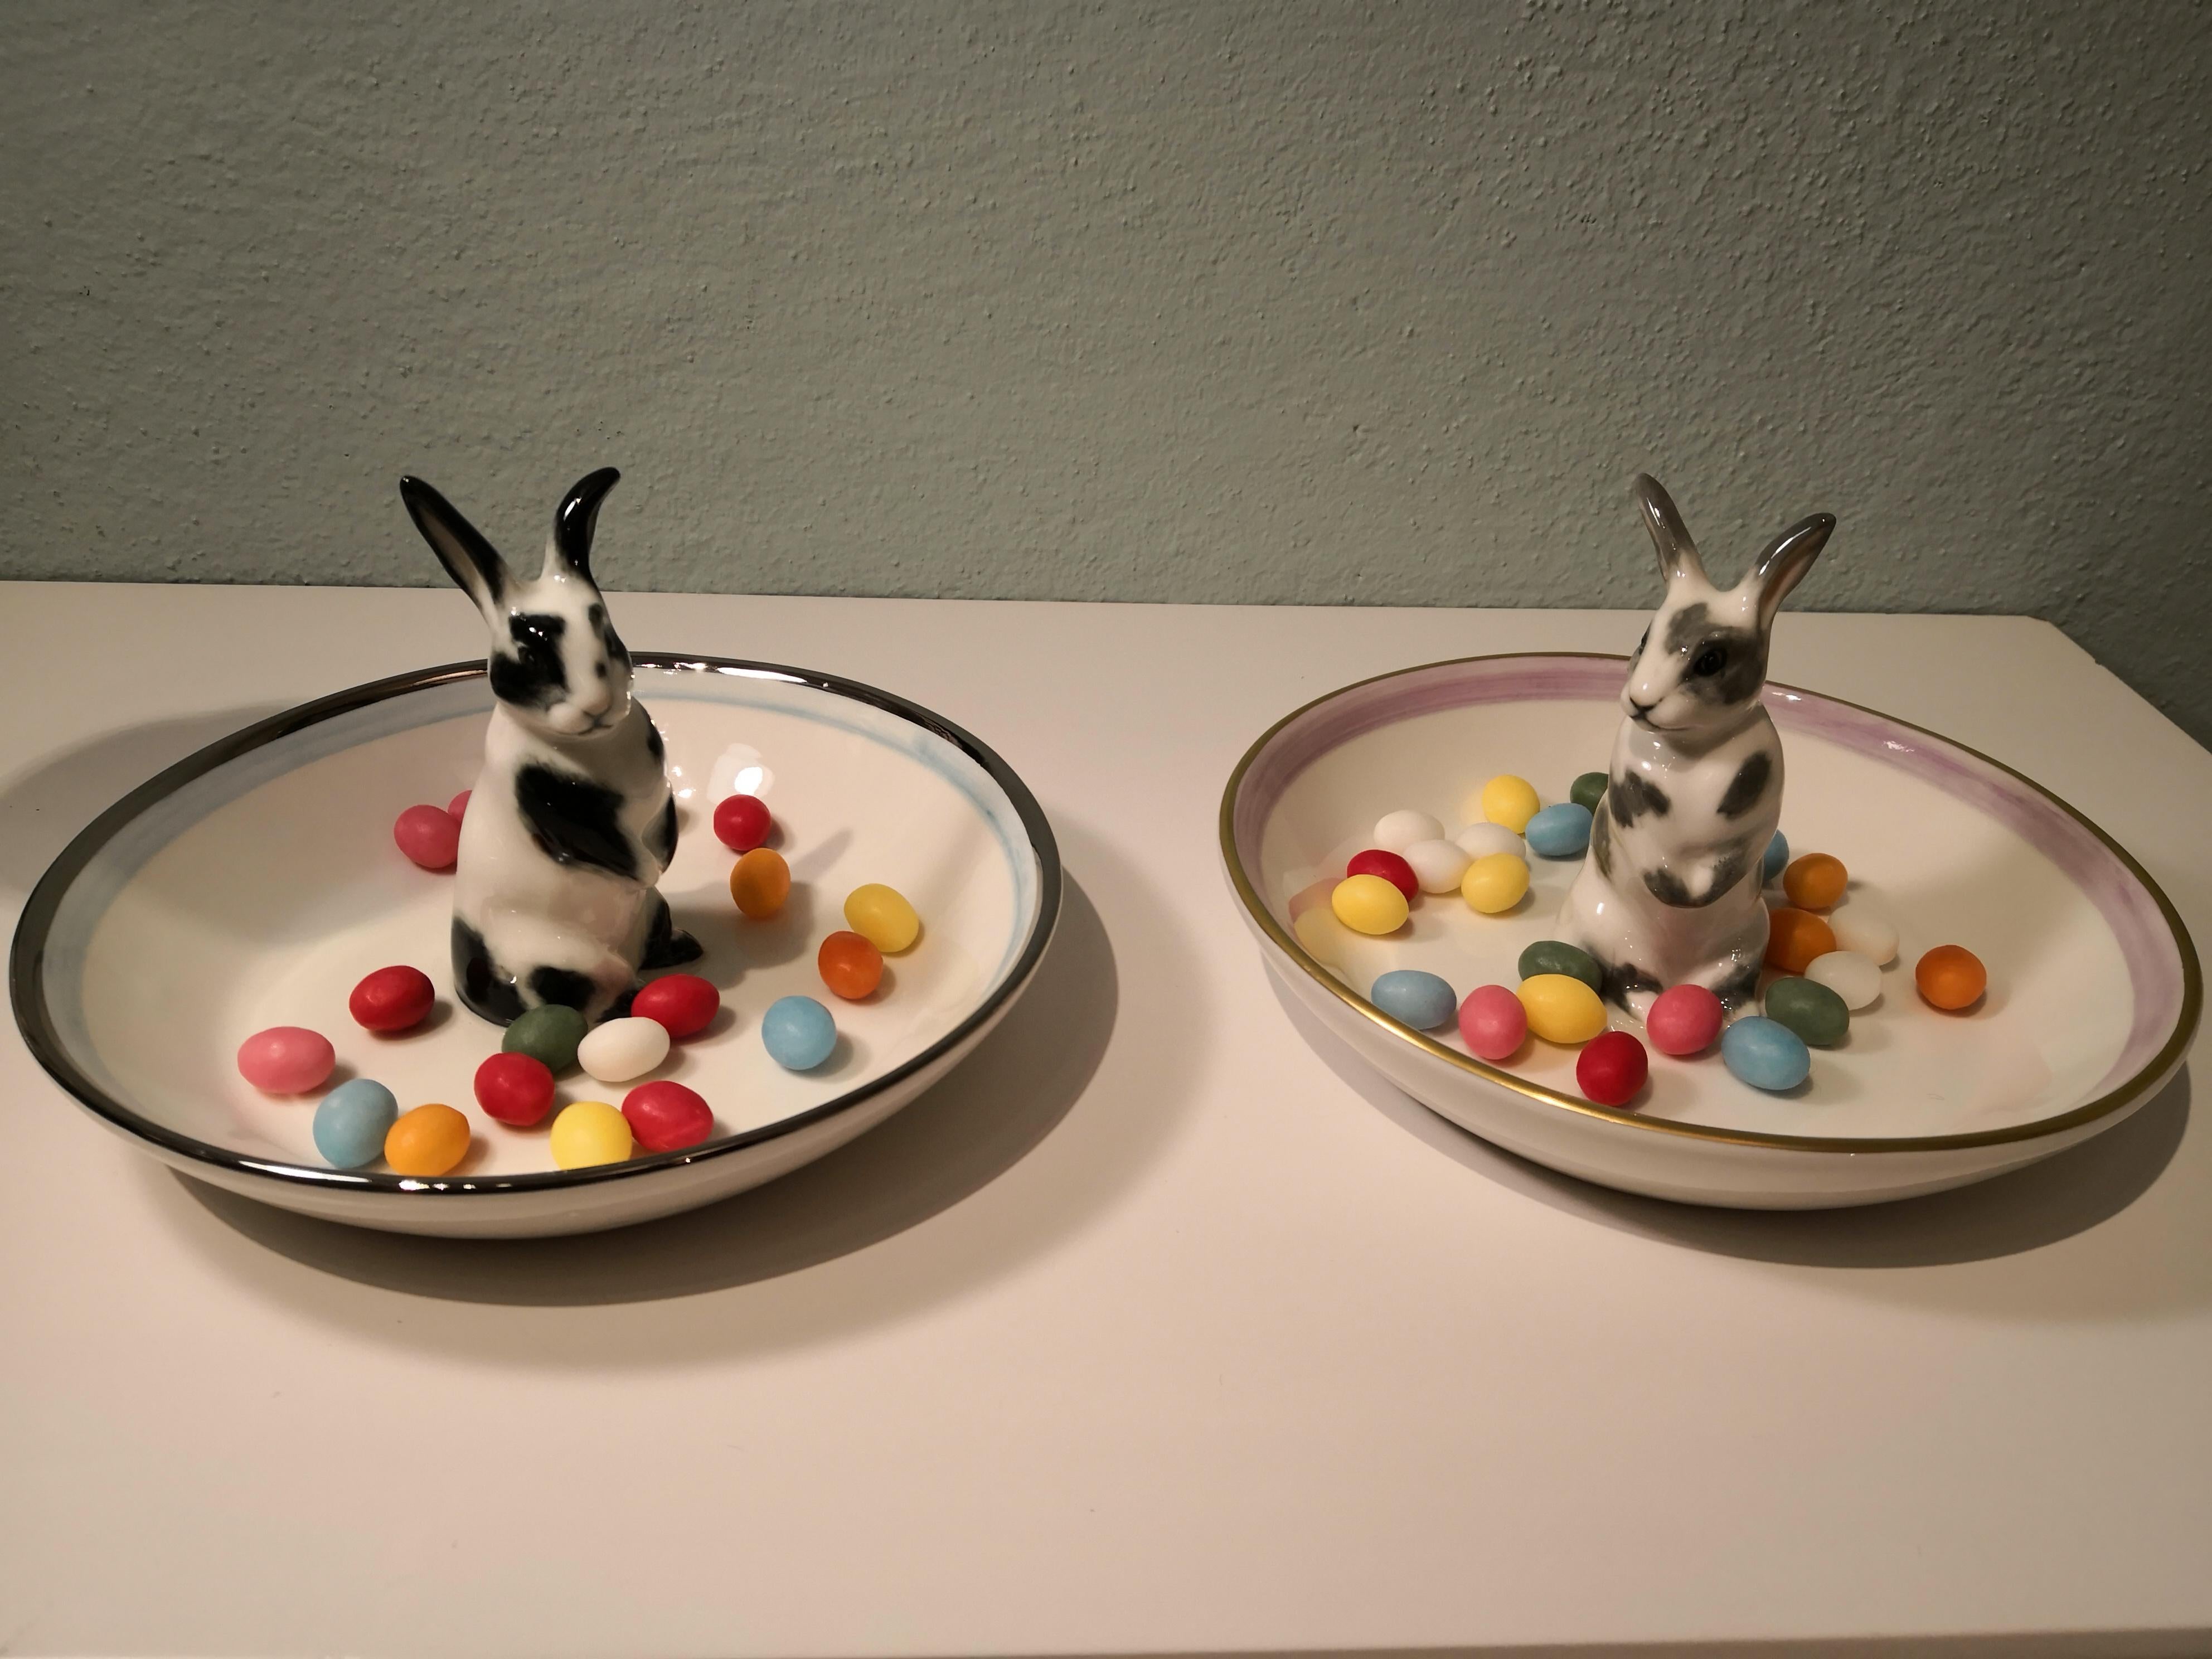 Vollständig handgefertigte Porzellanschale mit einem freihändig gemalten, naturalistischen Osterhasen in schwarzen und weißen Farben. Das Kaninchen sitzt in der Mitte der Schale, um Nüsse oder Süßigkeiten um die Figur herum zu dekorieren. Umrandet